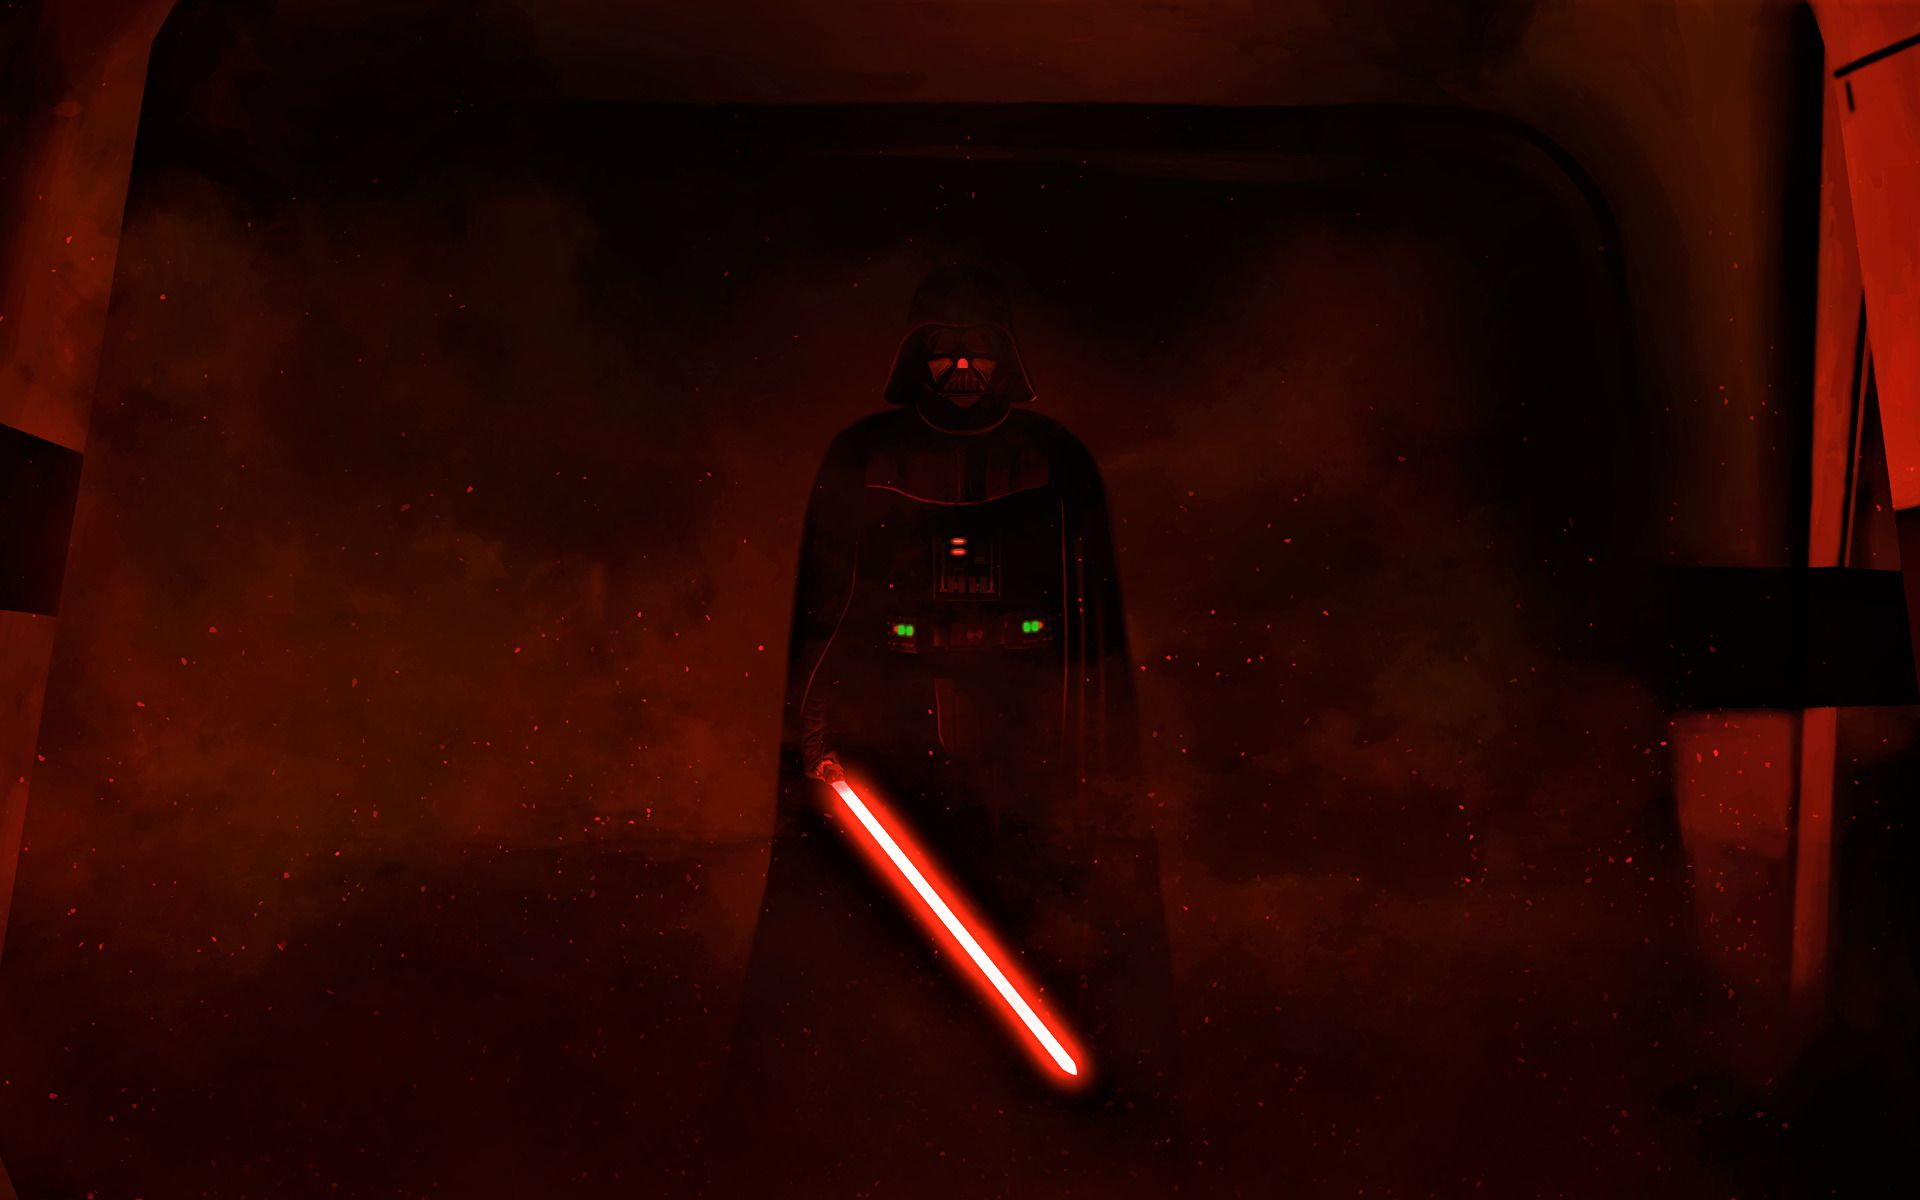 Darth Vader [1920x1080]